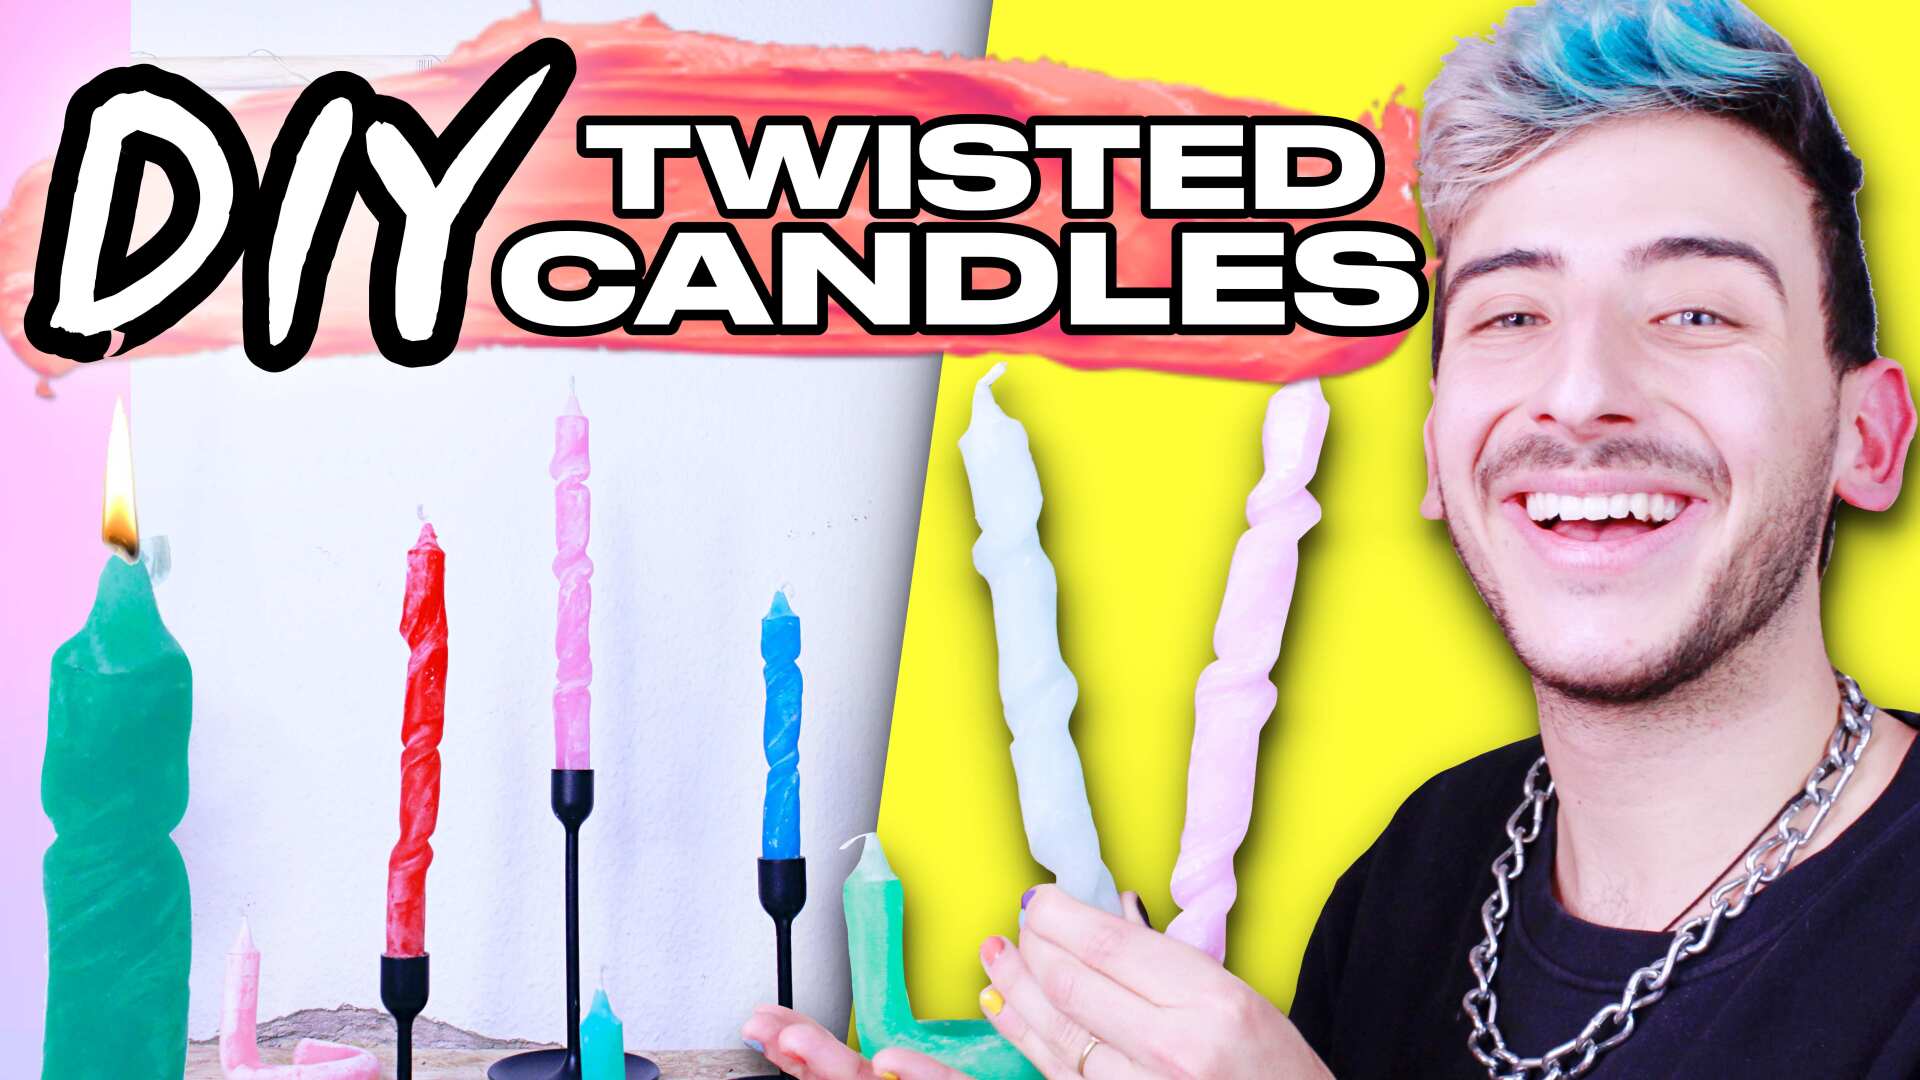 Twisted Candles günstig & einfach selber machen! DIY Anleitung Deutsch - Dimxoo